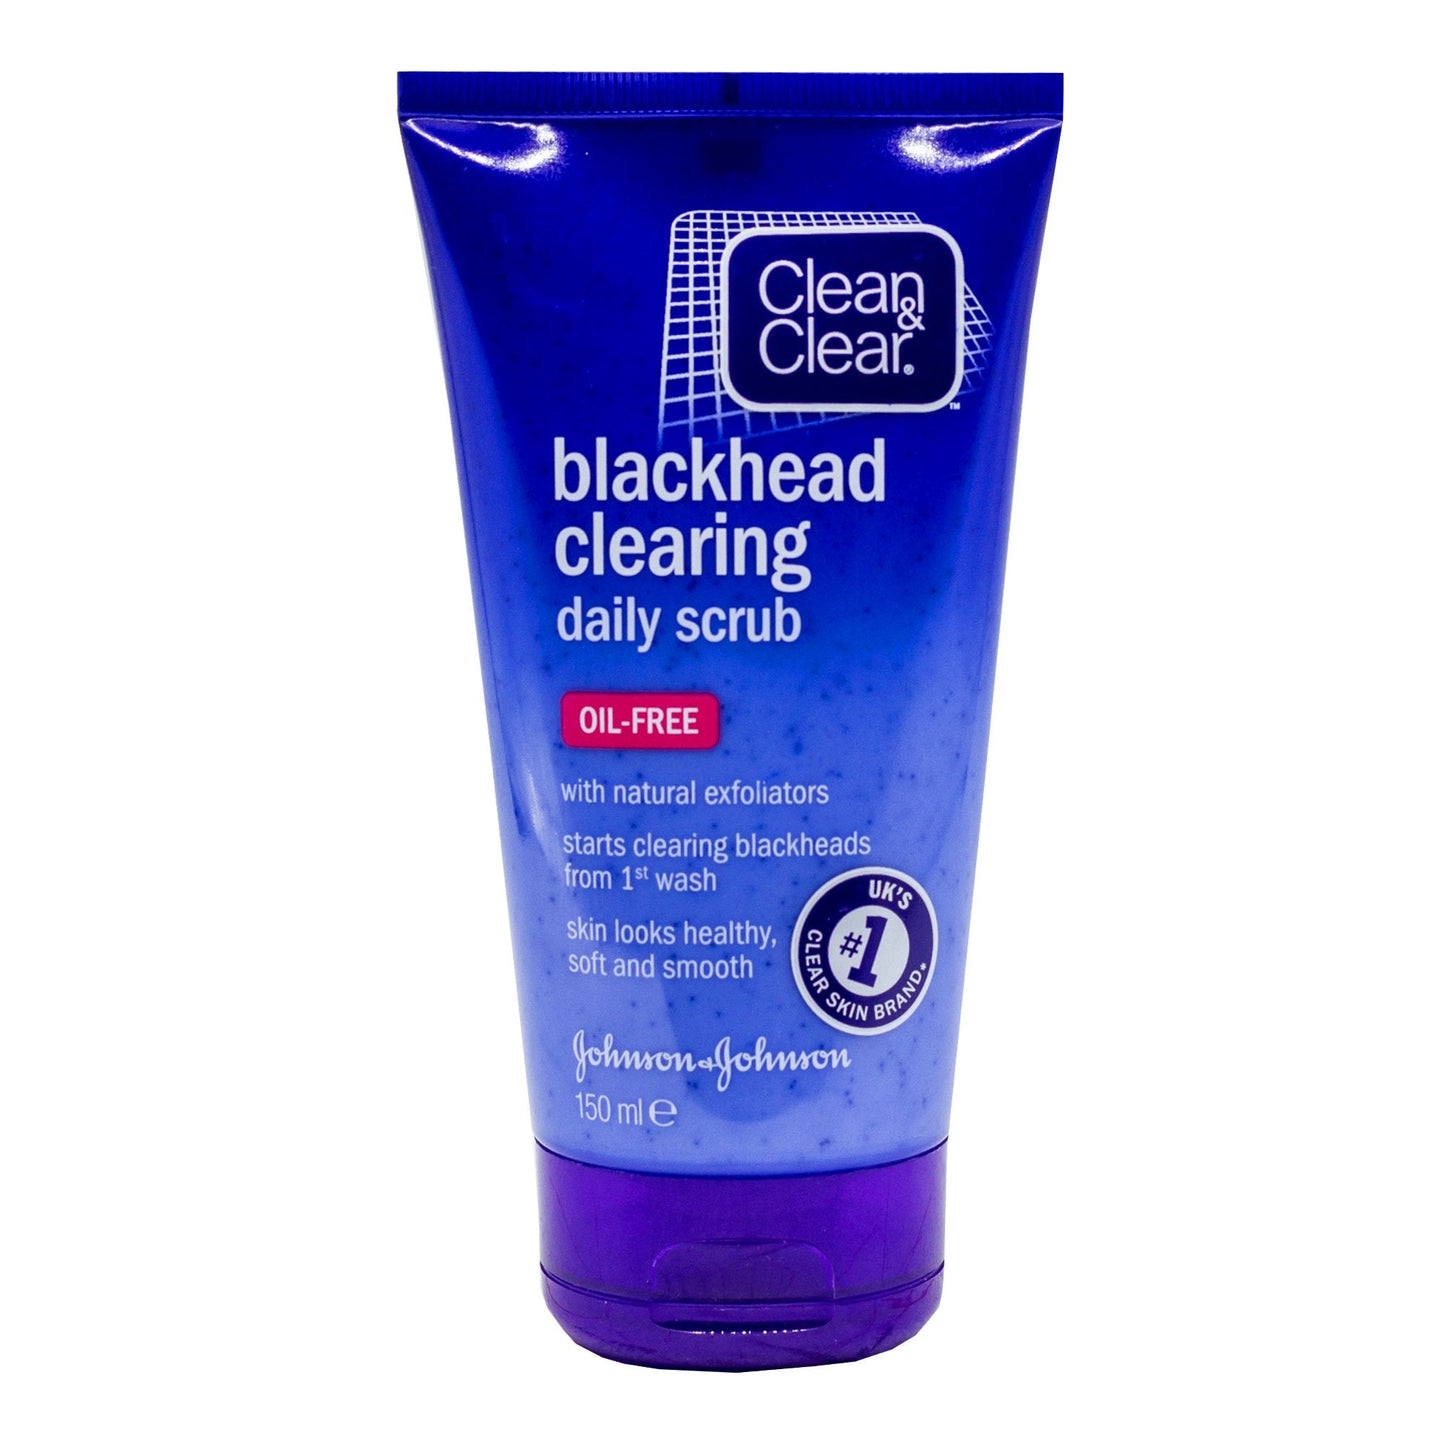 CLEAN & CLEAR DAILY BLACKHEAD CLEARING SCRUB 150 ML